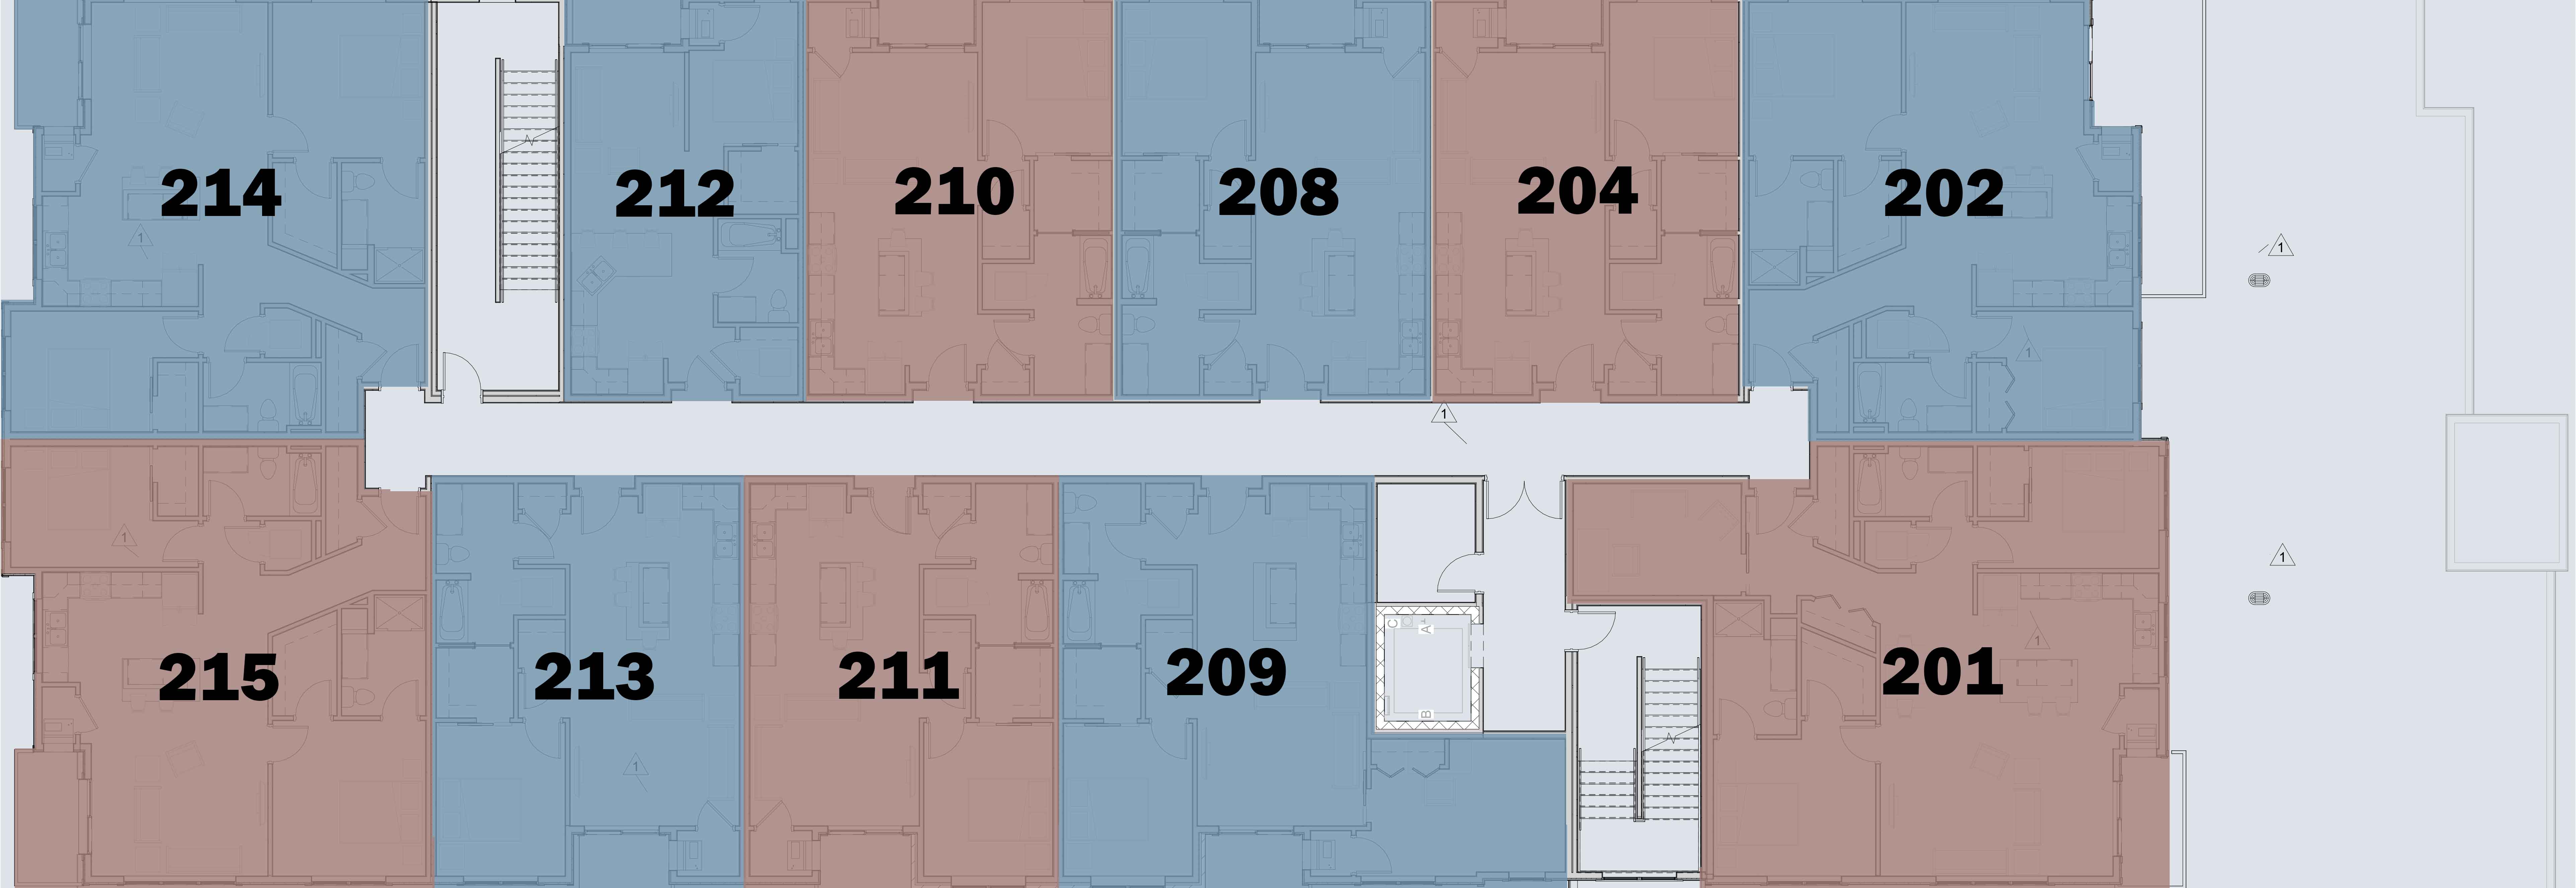 Midtown Reserve second level floor plan